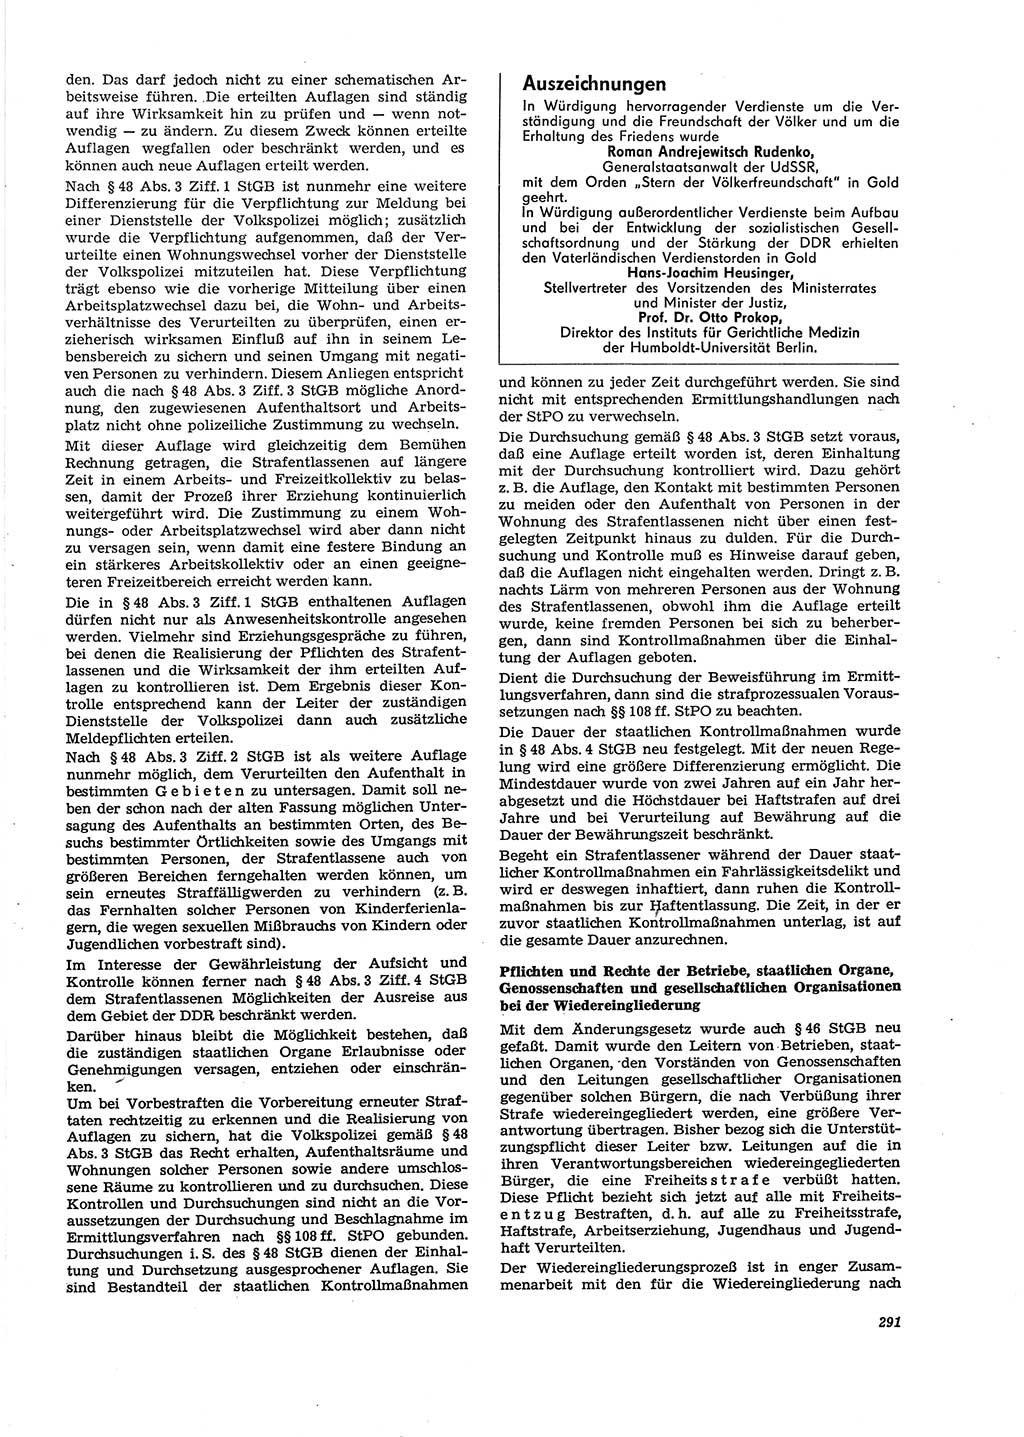 Neue Justiz (NJ), Zeitschrift für Recht und Rechtswissenschaft [Deutsche Demokratische Republik (DDR)], 29. Jahrgang 1975, Seite 291 (NJ DDR 1975, S. 291)